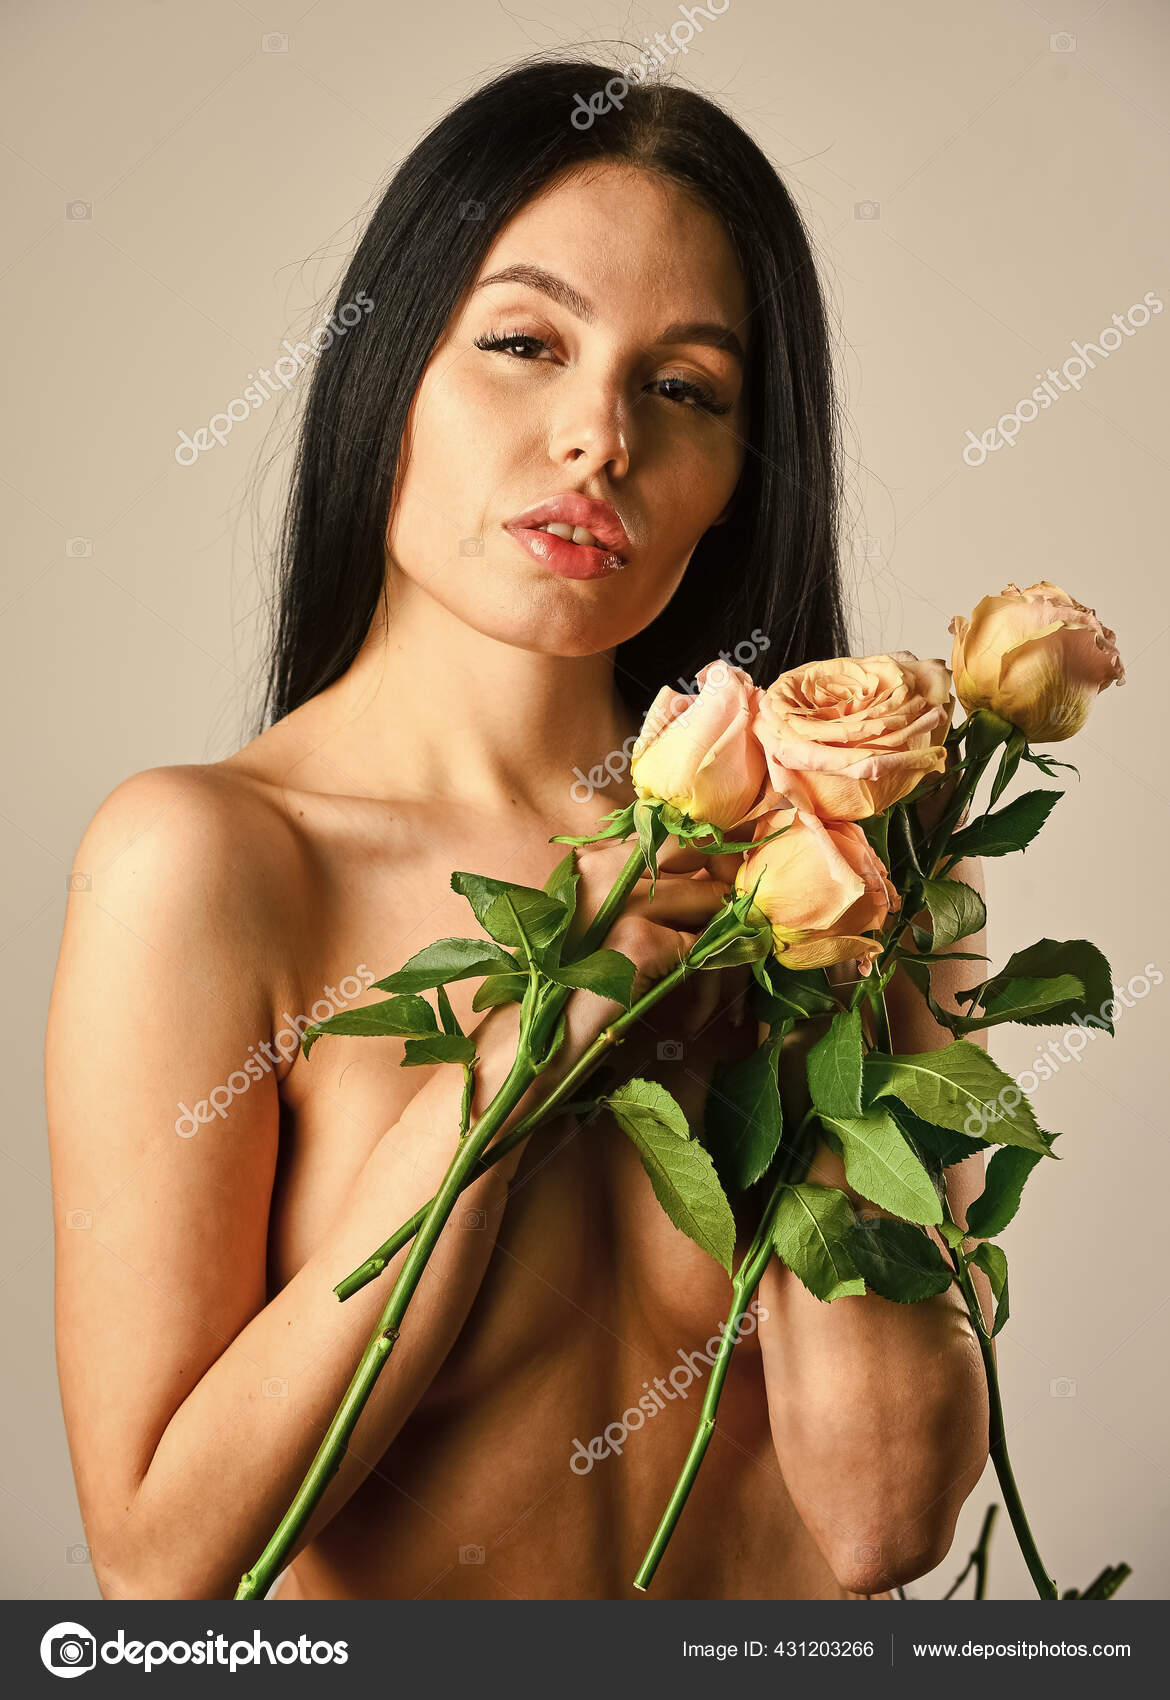 Голая девушка с букетом белых цветов » Голые девушки - фото эротика красивых женщин на садовыйквартал33.рф